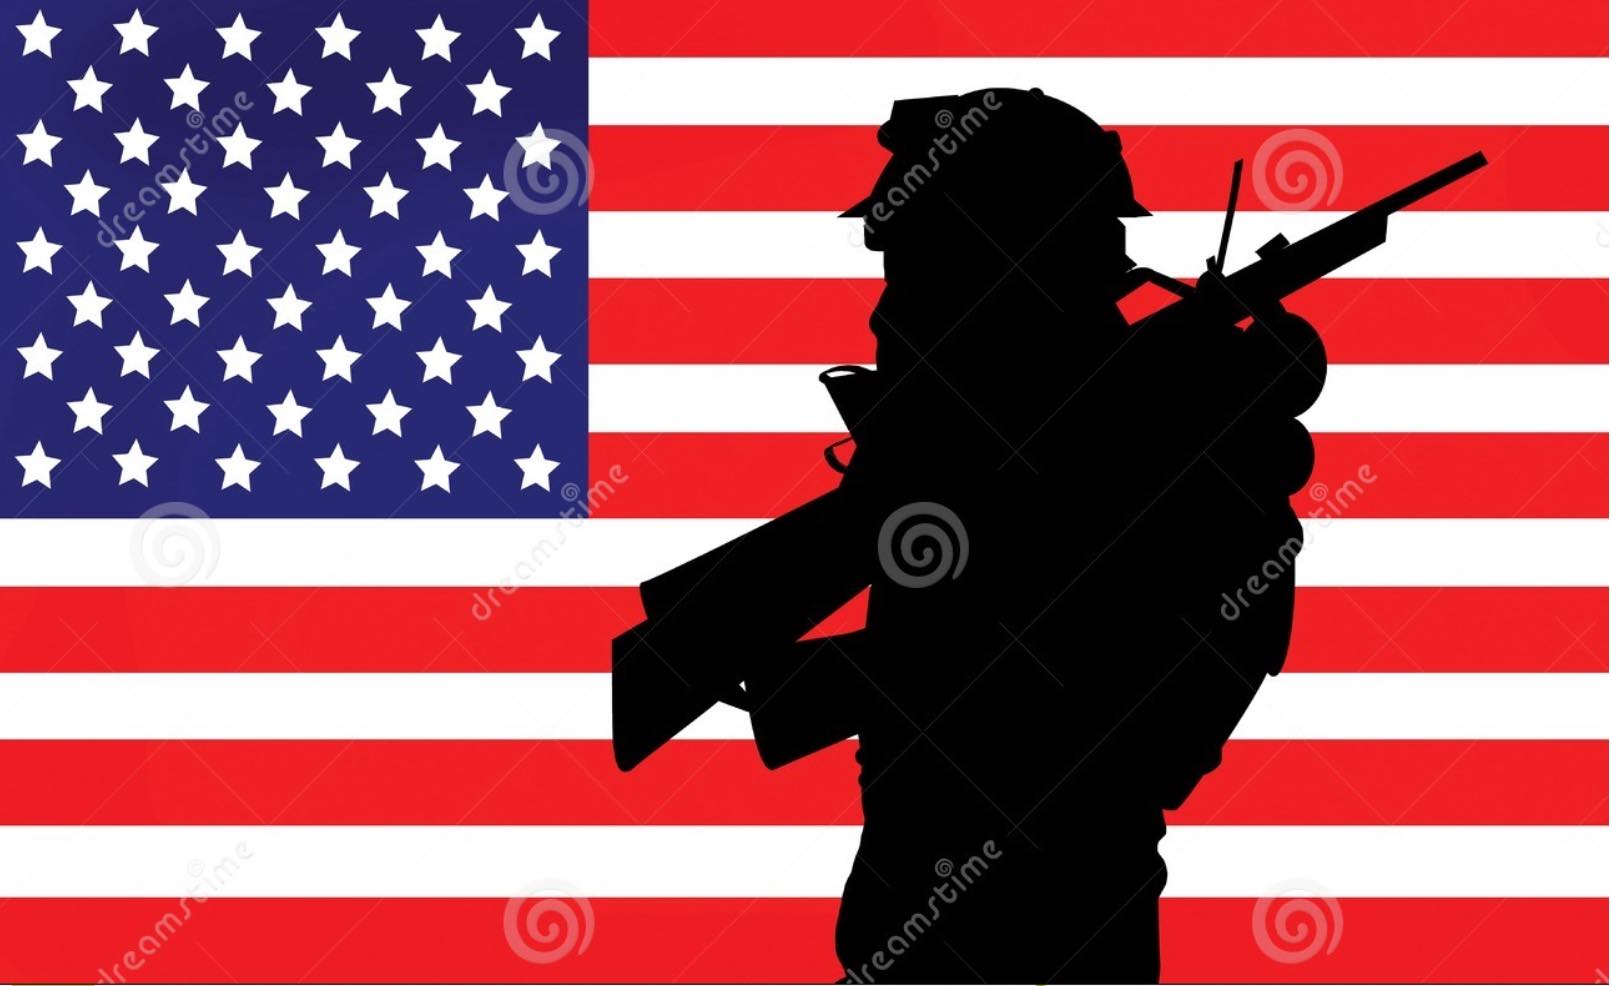 flag_soldier_gun